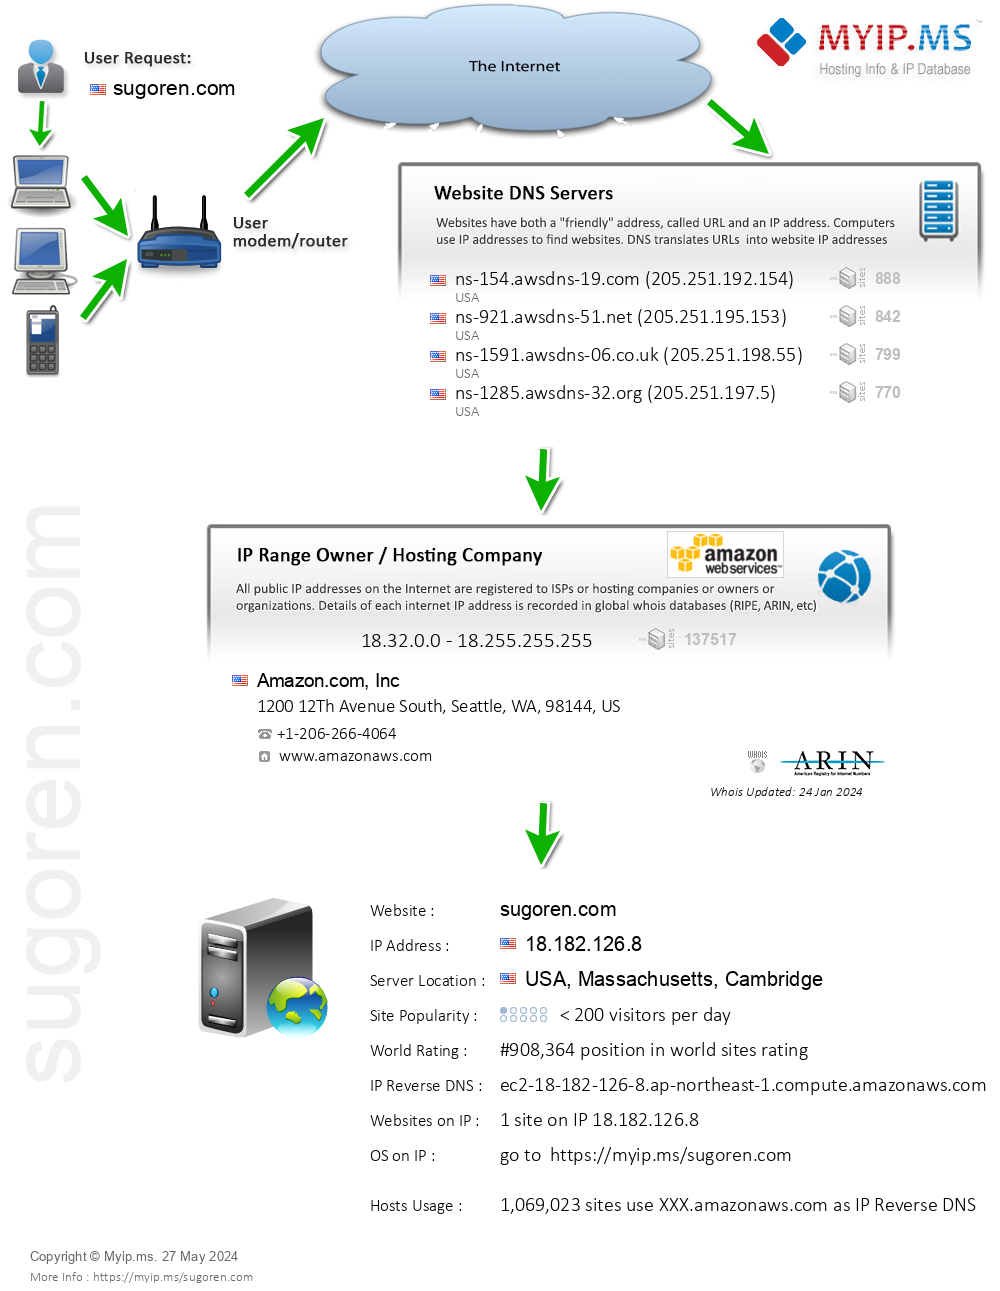 Sugoren.com - Website Hosting Visual IP Diagram